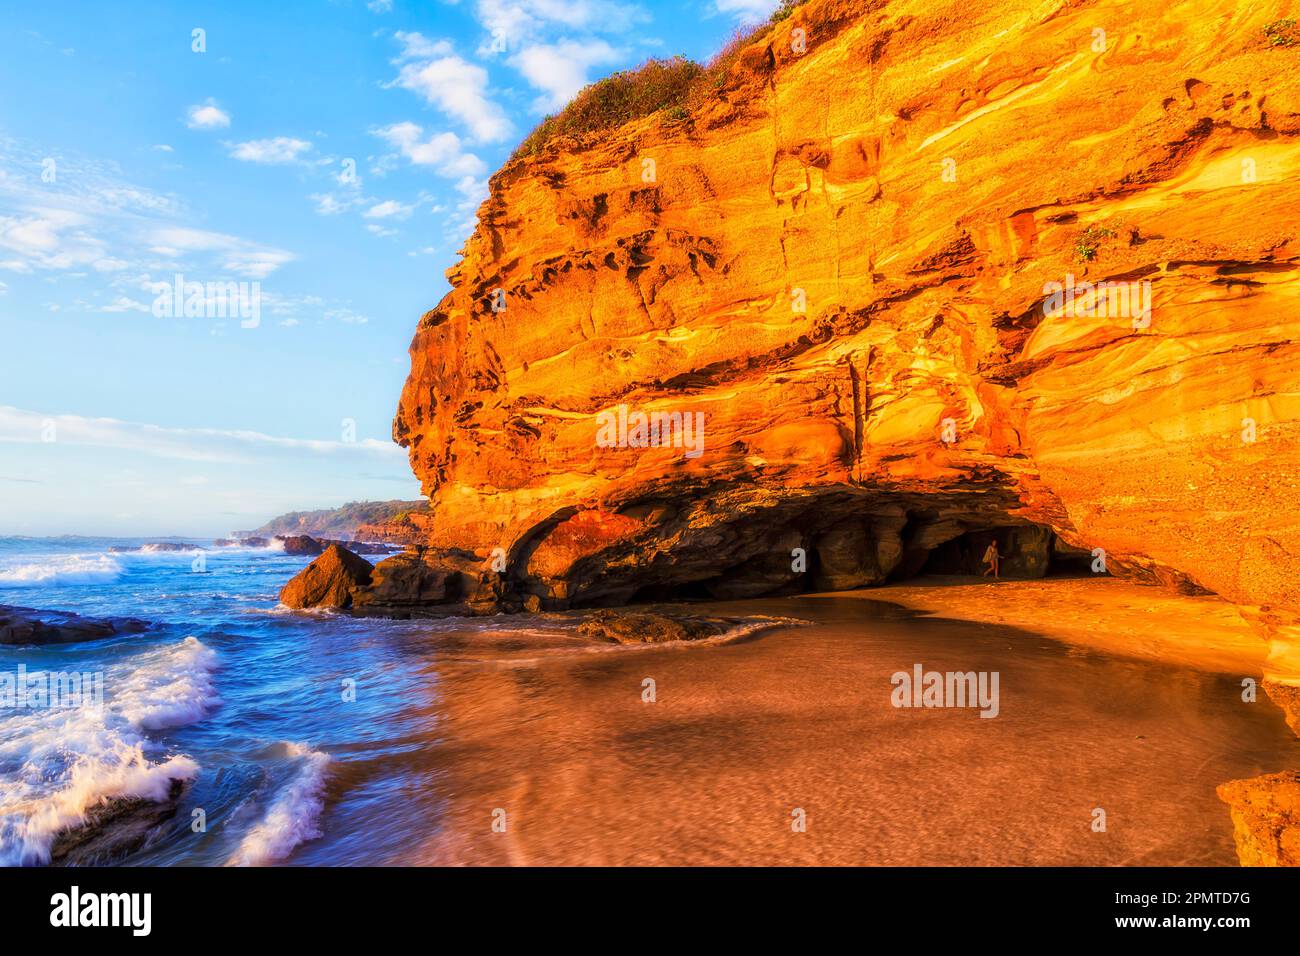 Ingresso alla grotta della spiaggia di cave erose, al largo della spiaggia di sabbia, con luce solare calda e soffusa - costa australiana del Pacifico. Foto Stock